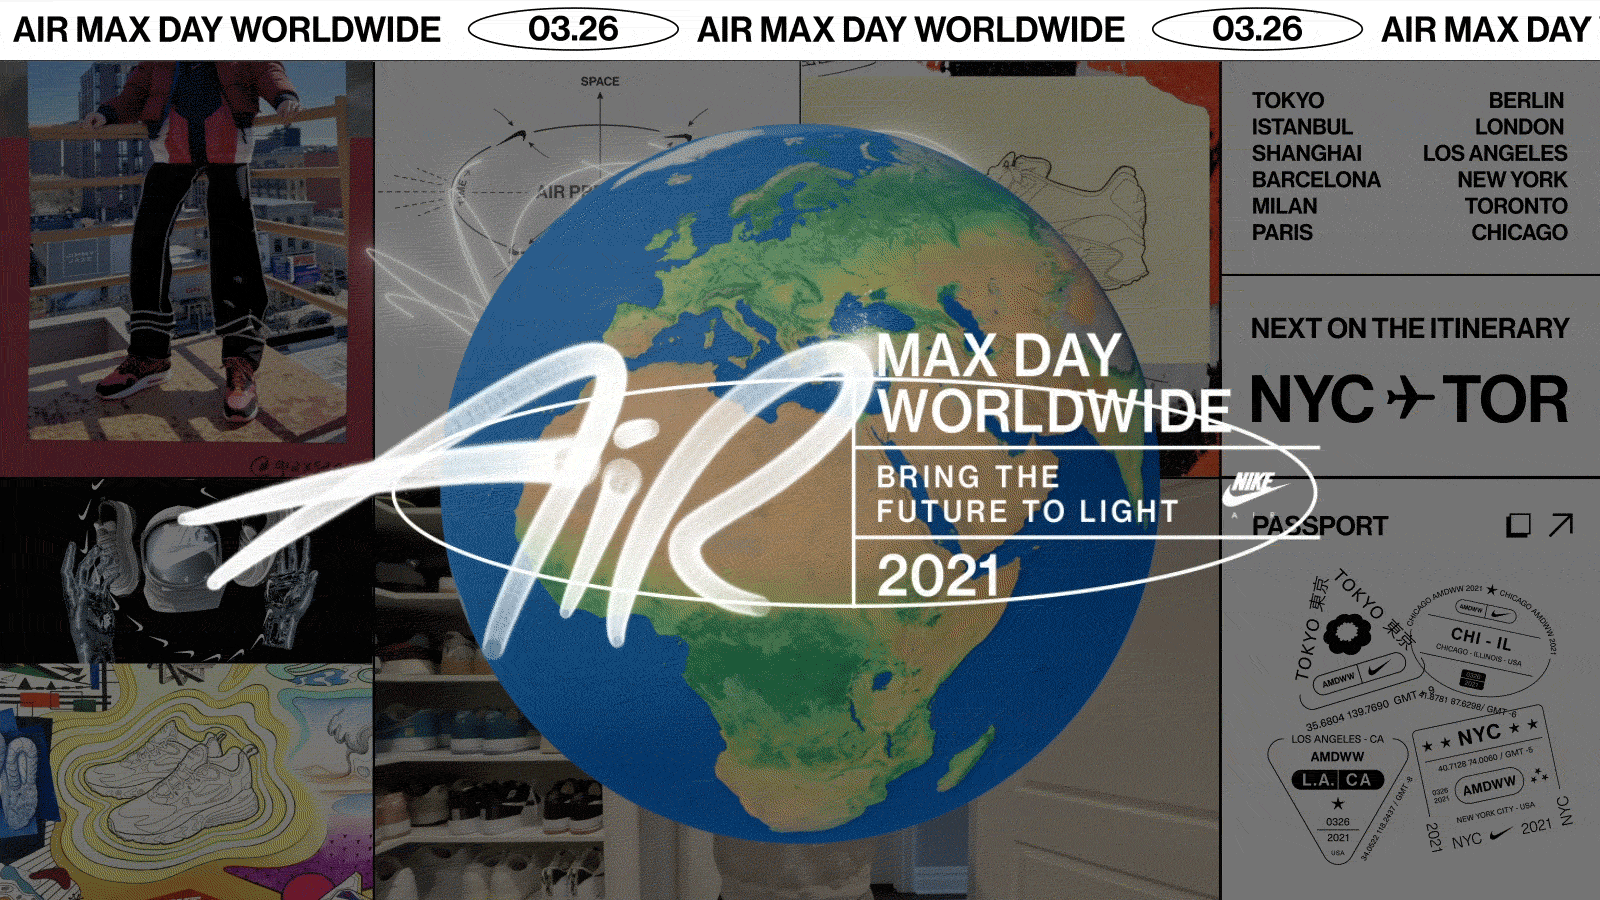 Air Max Day 2021